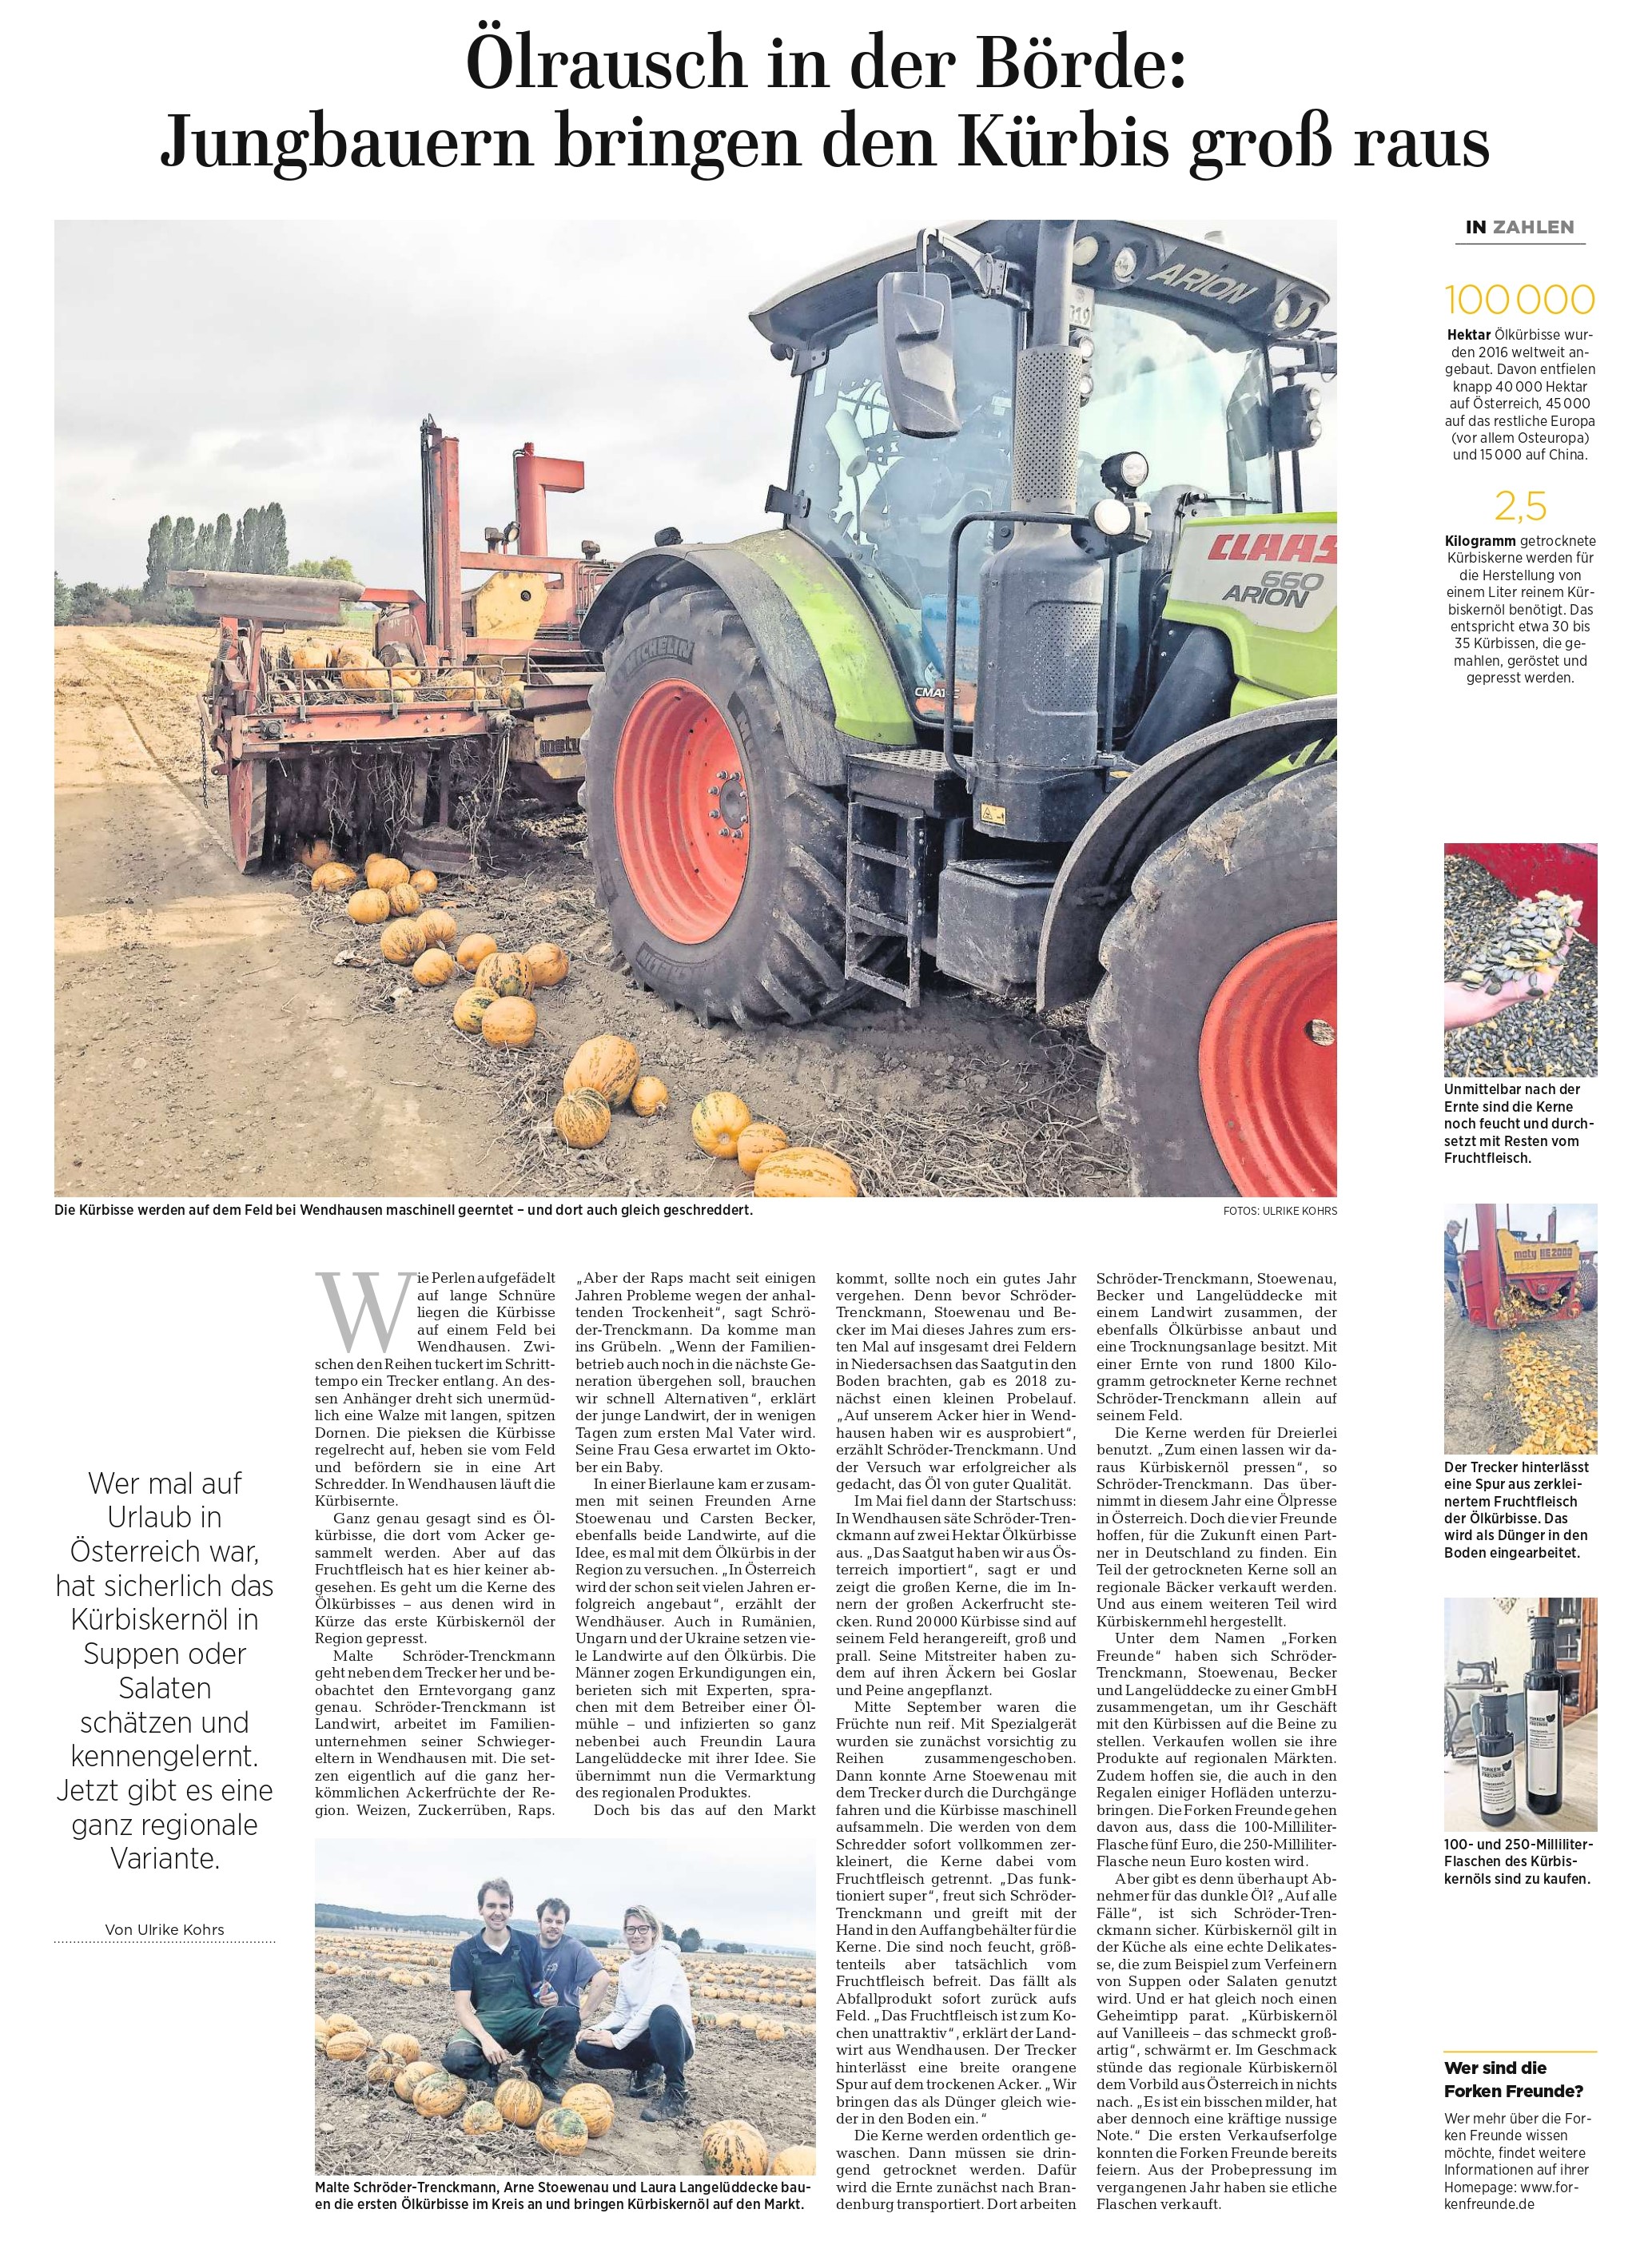 2019_09_18_ Hildesheimer Allgemeine Zeitung - Ölrausch in der Börde Jungbauern bringen den Kürbis groß raus_page-0001 (2)